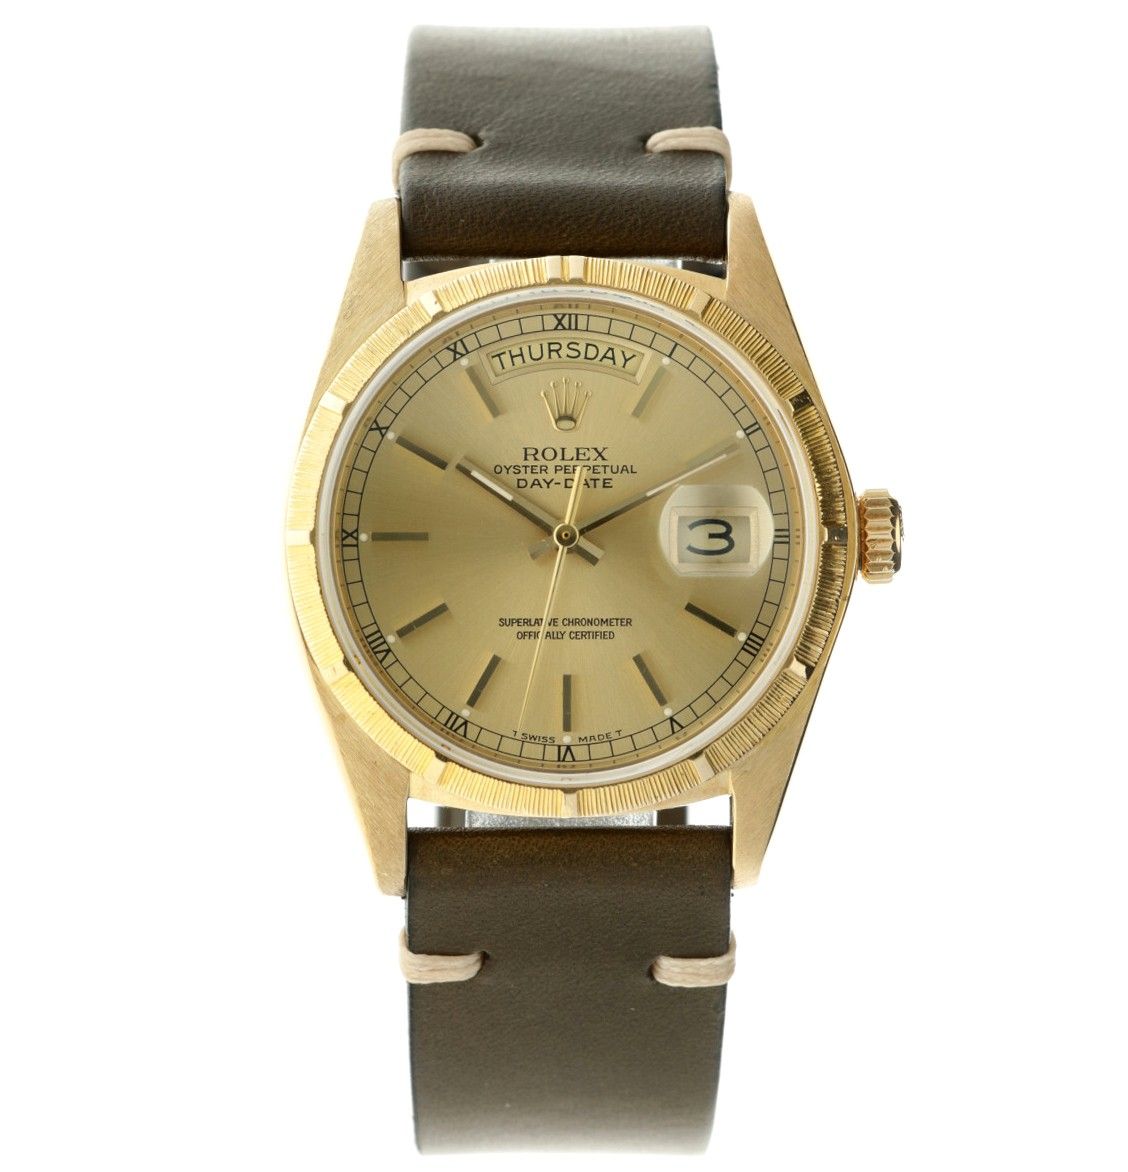 Rolex Day-Date 18038 - Men's watch - apprx. 1978. Gehäuse: Gelbgold (18 kt.) - A&hellip;